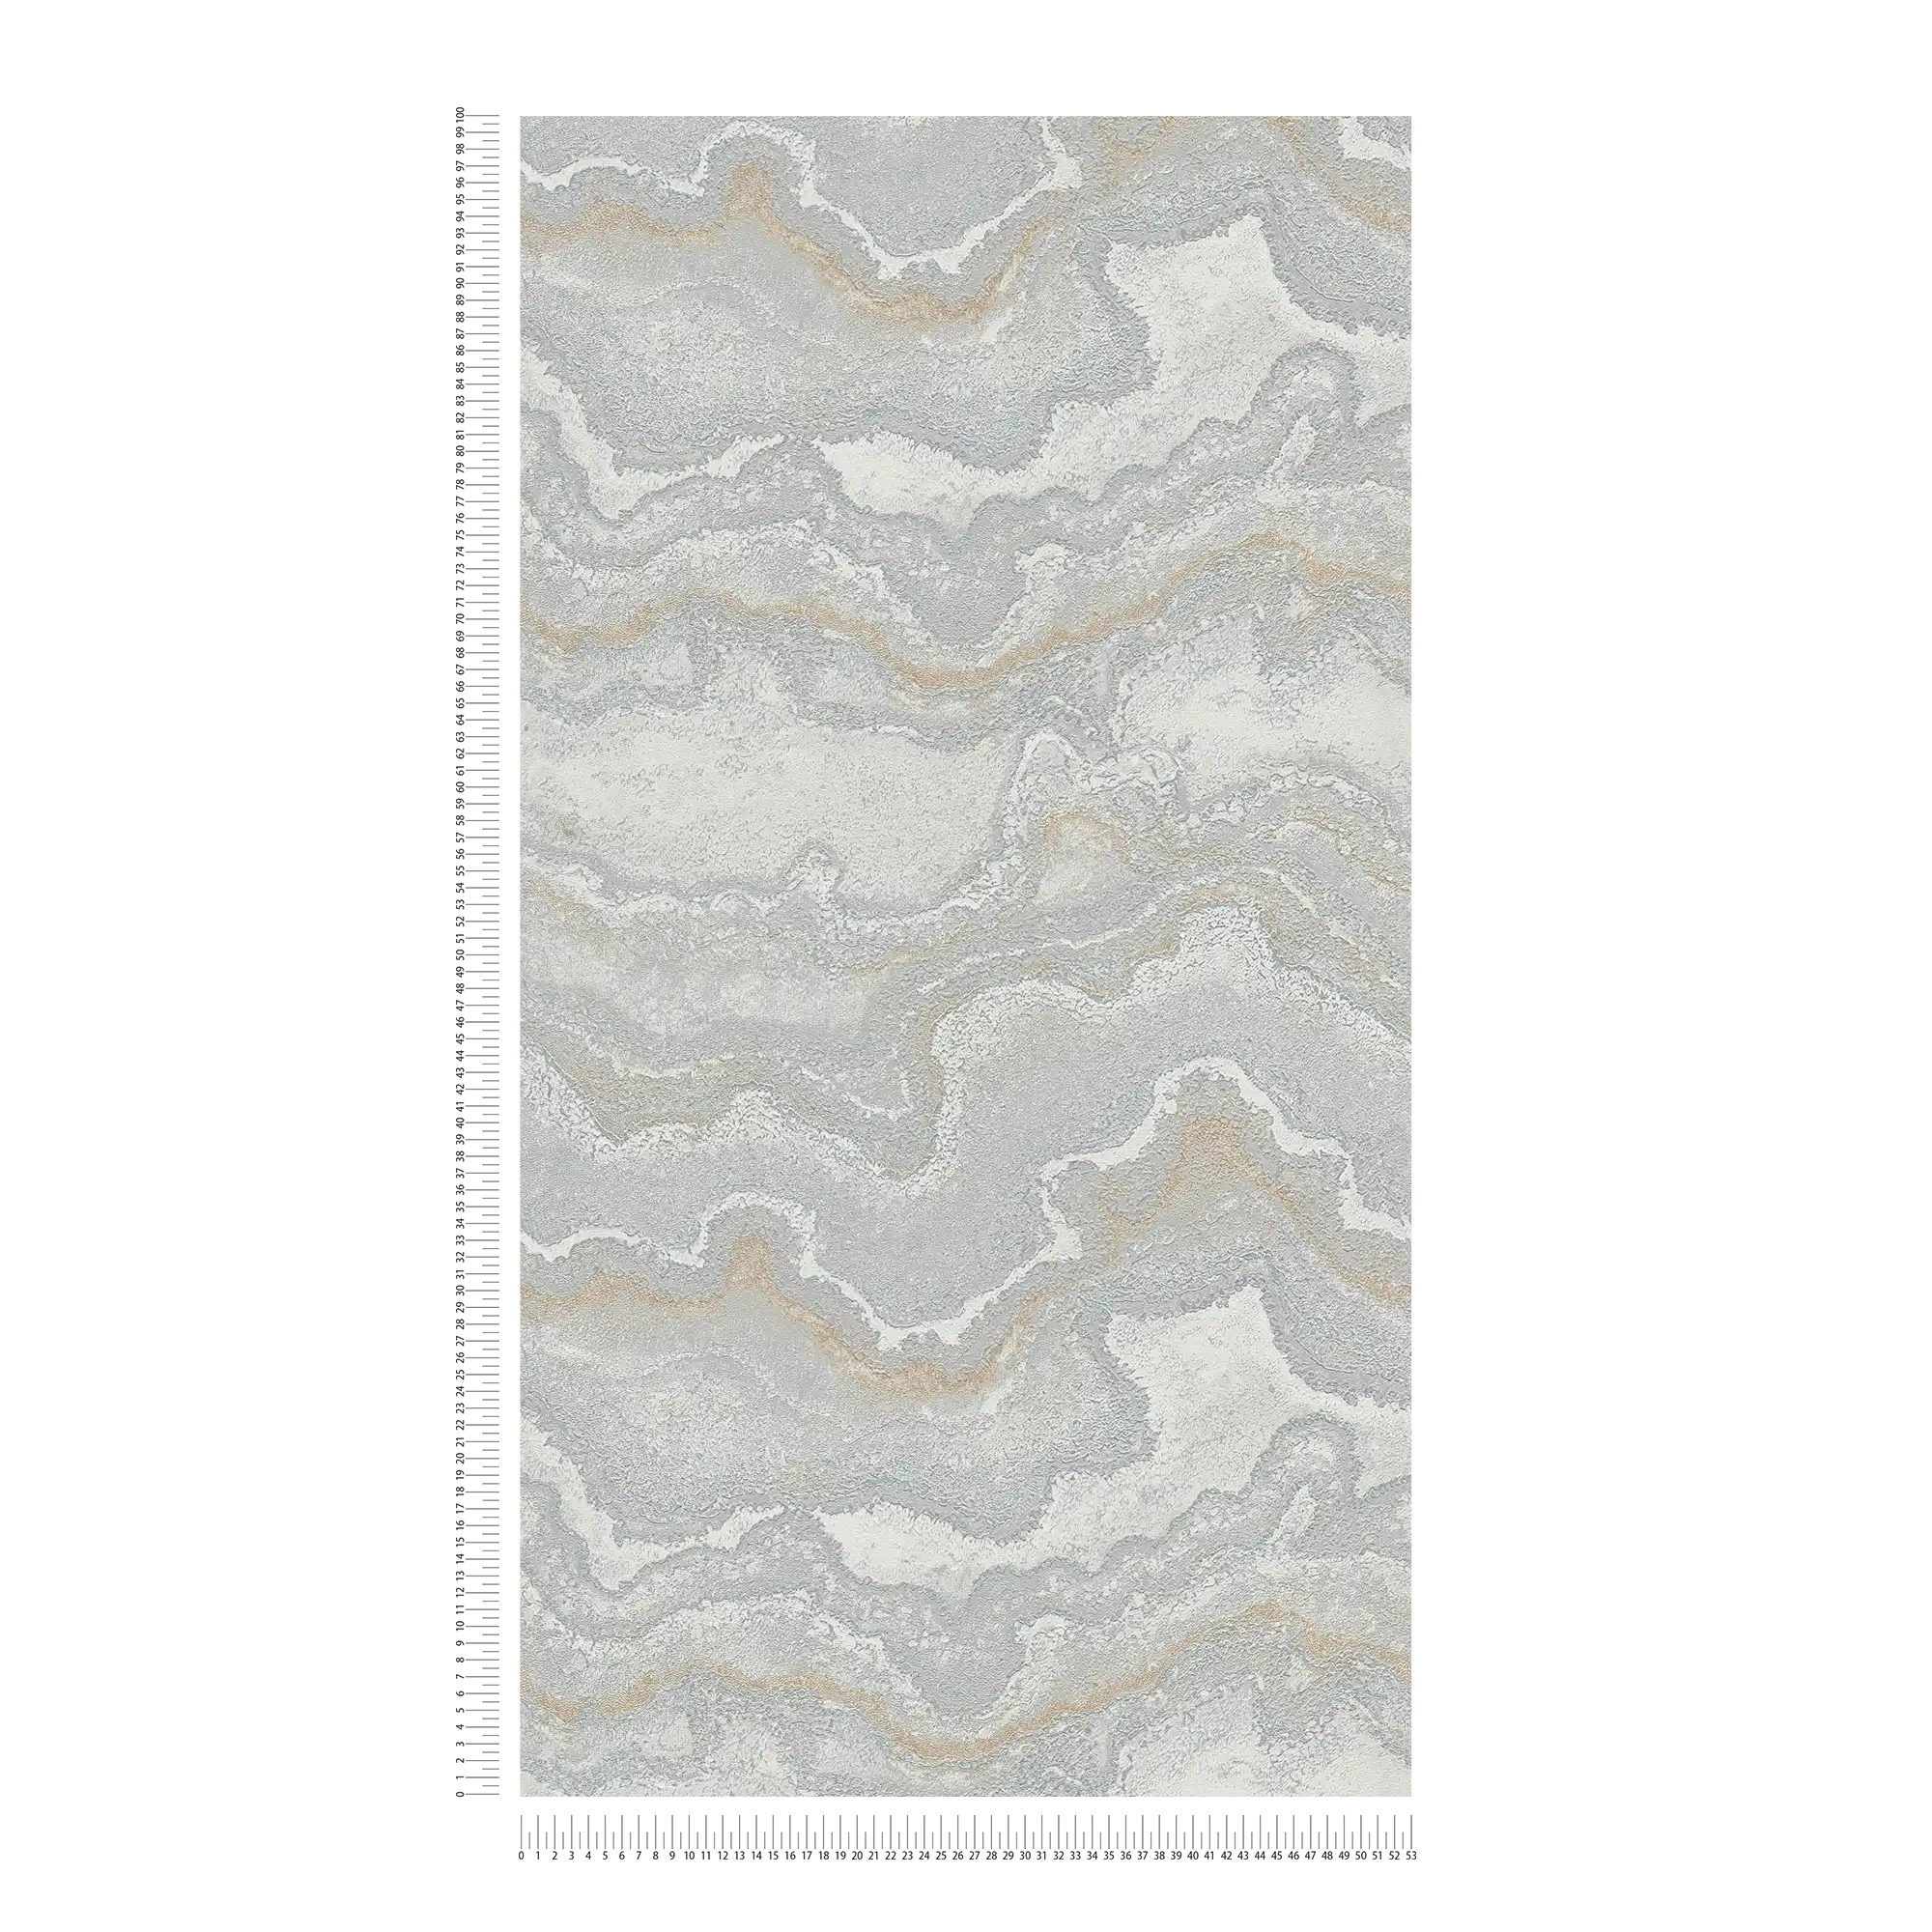             Vliesbehang met marmerpatroon - grijs, zilver, goud
        